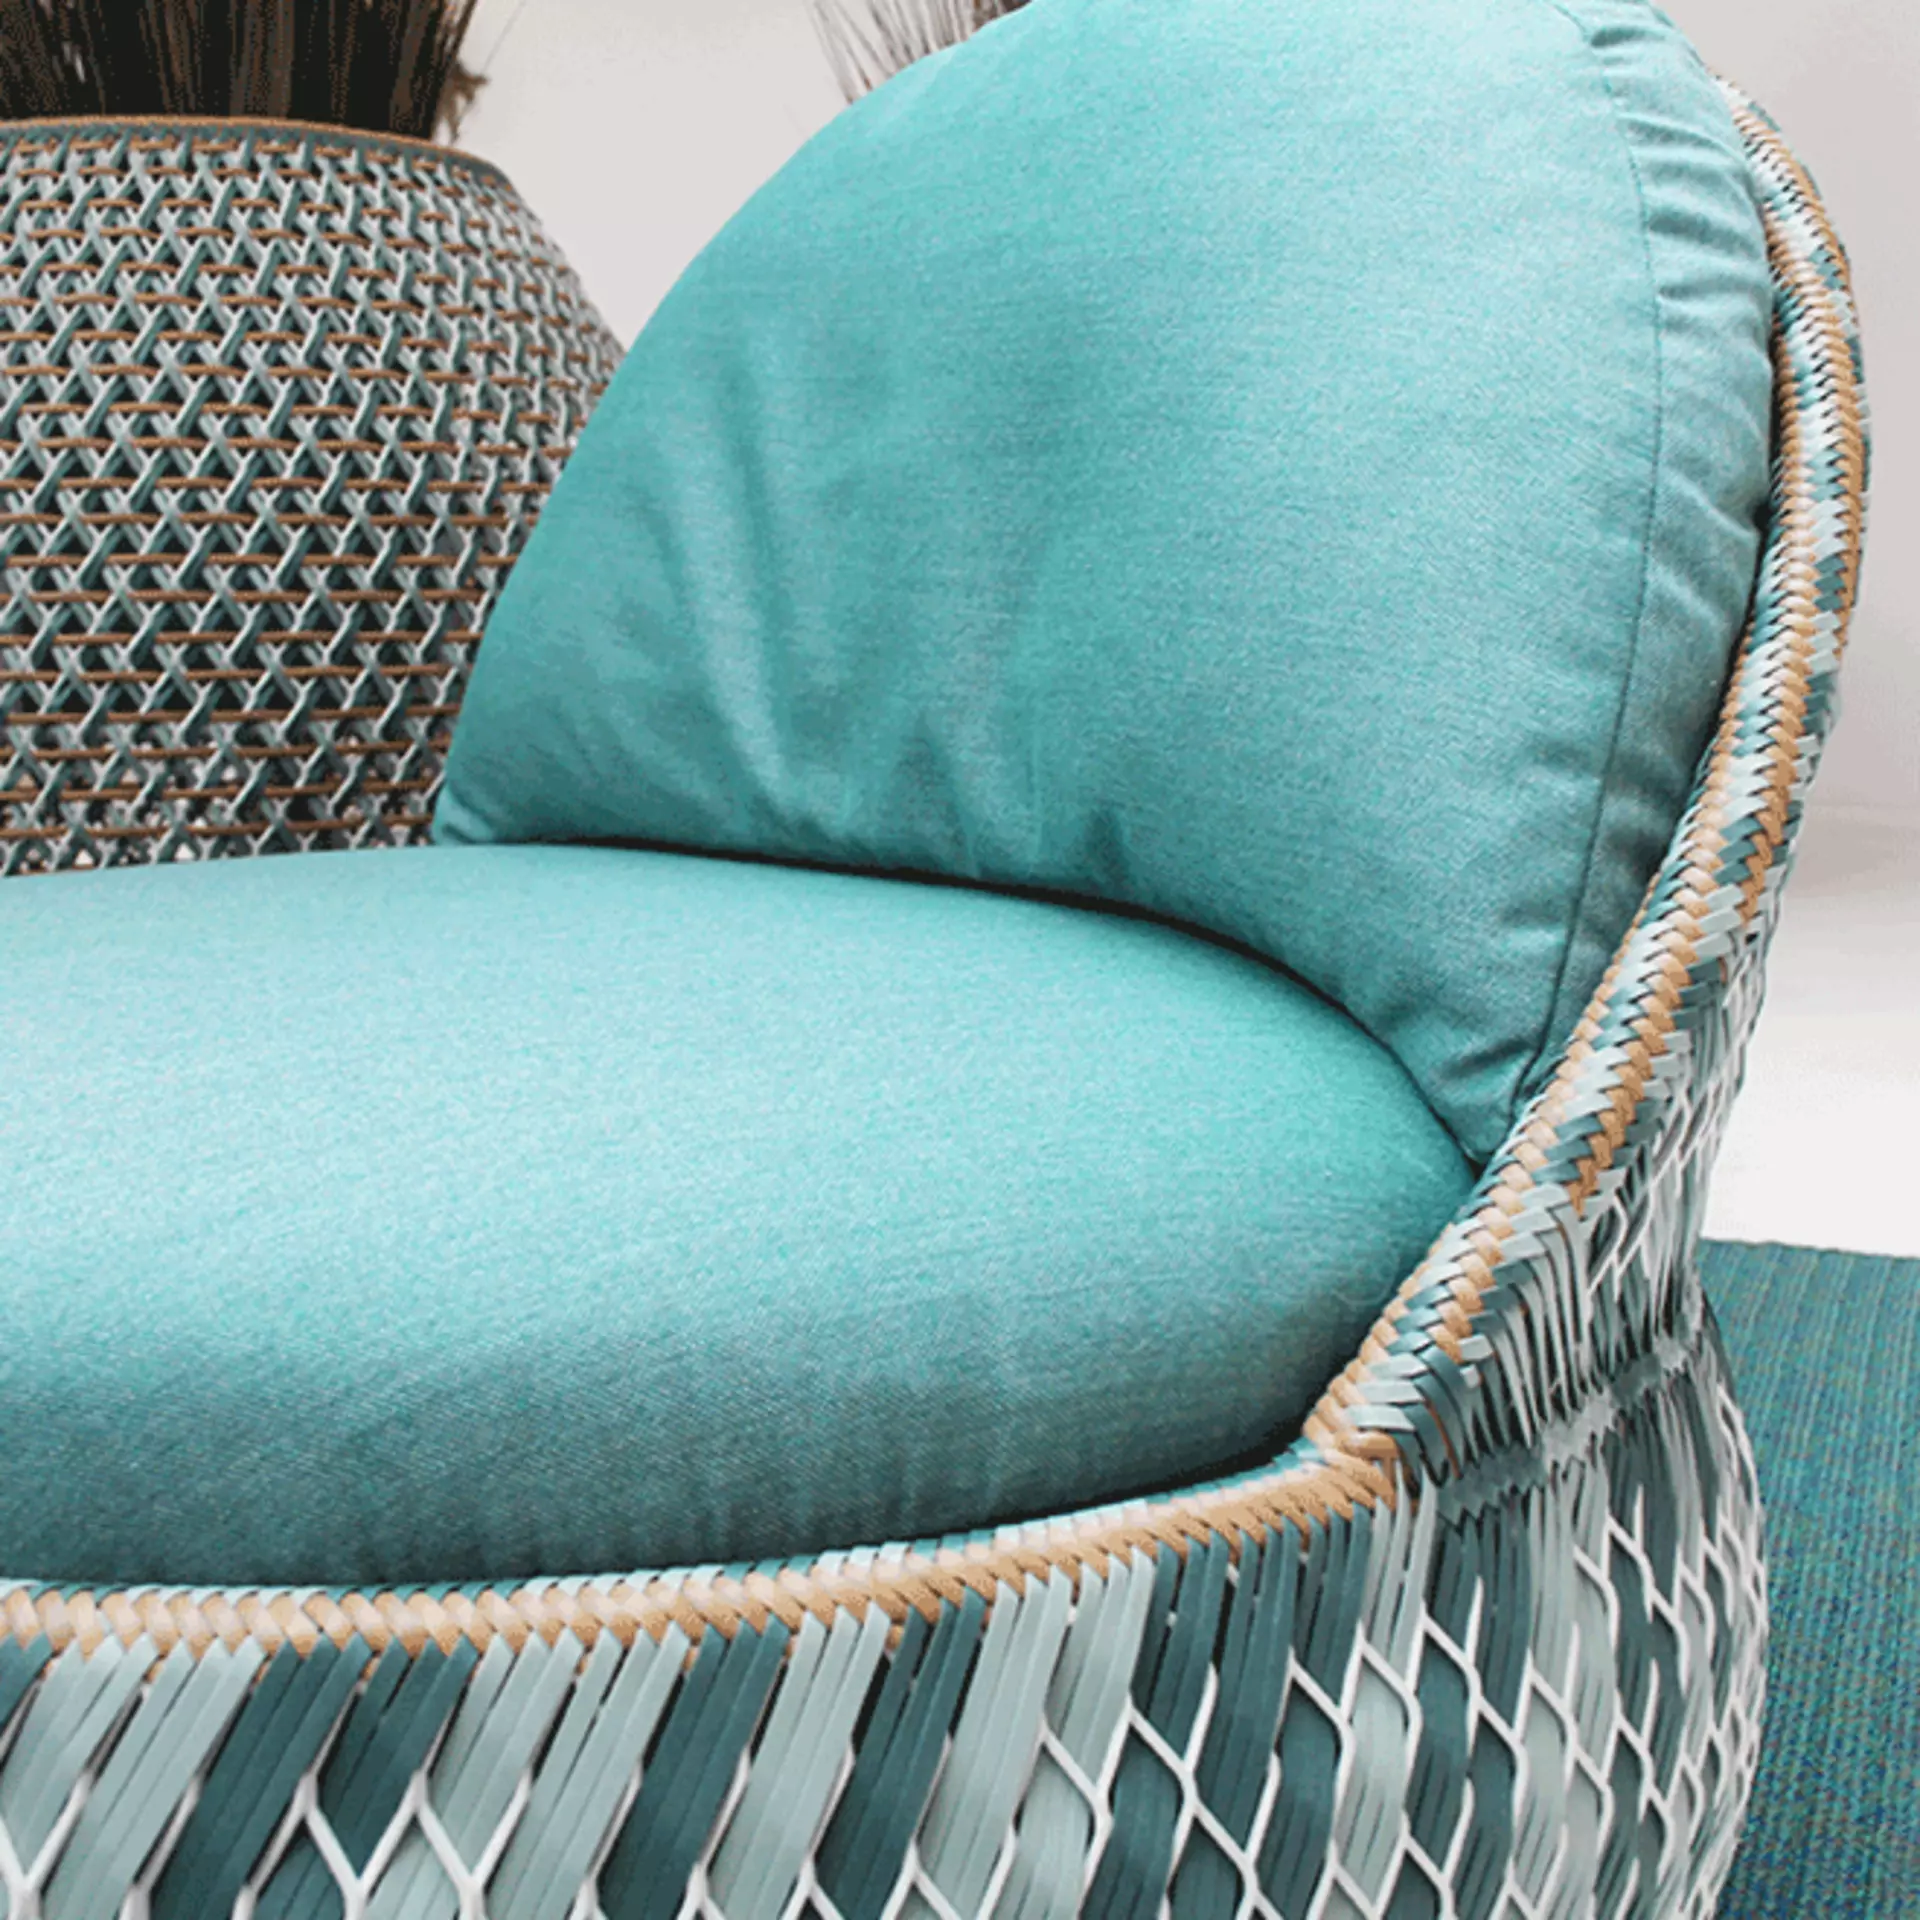 Luxus pur für den Garten - der Sessel Dala von Dedon